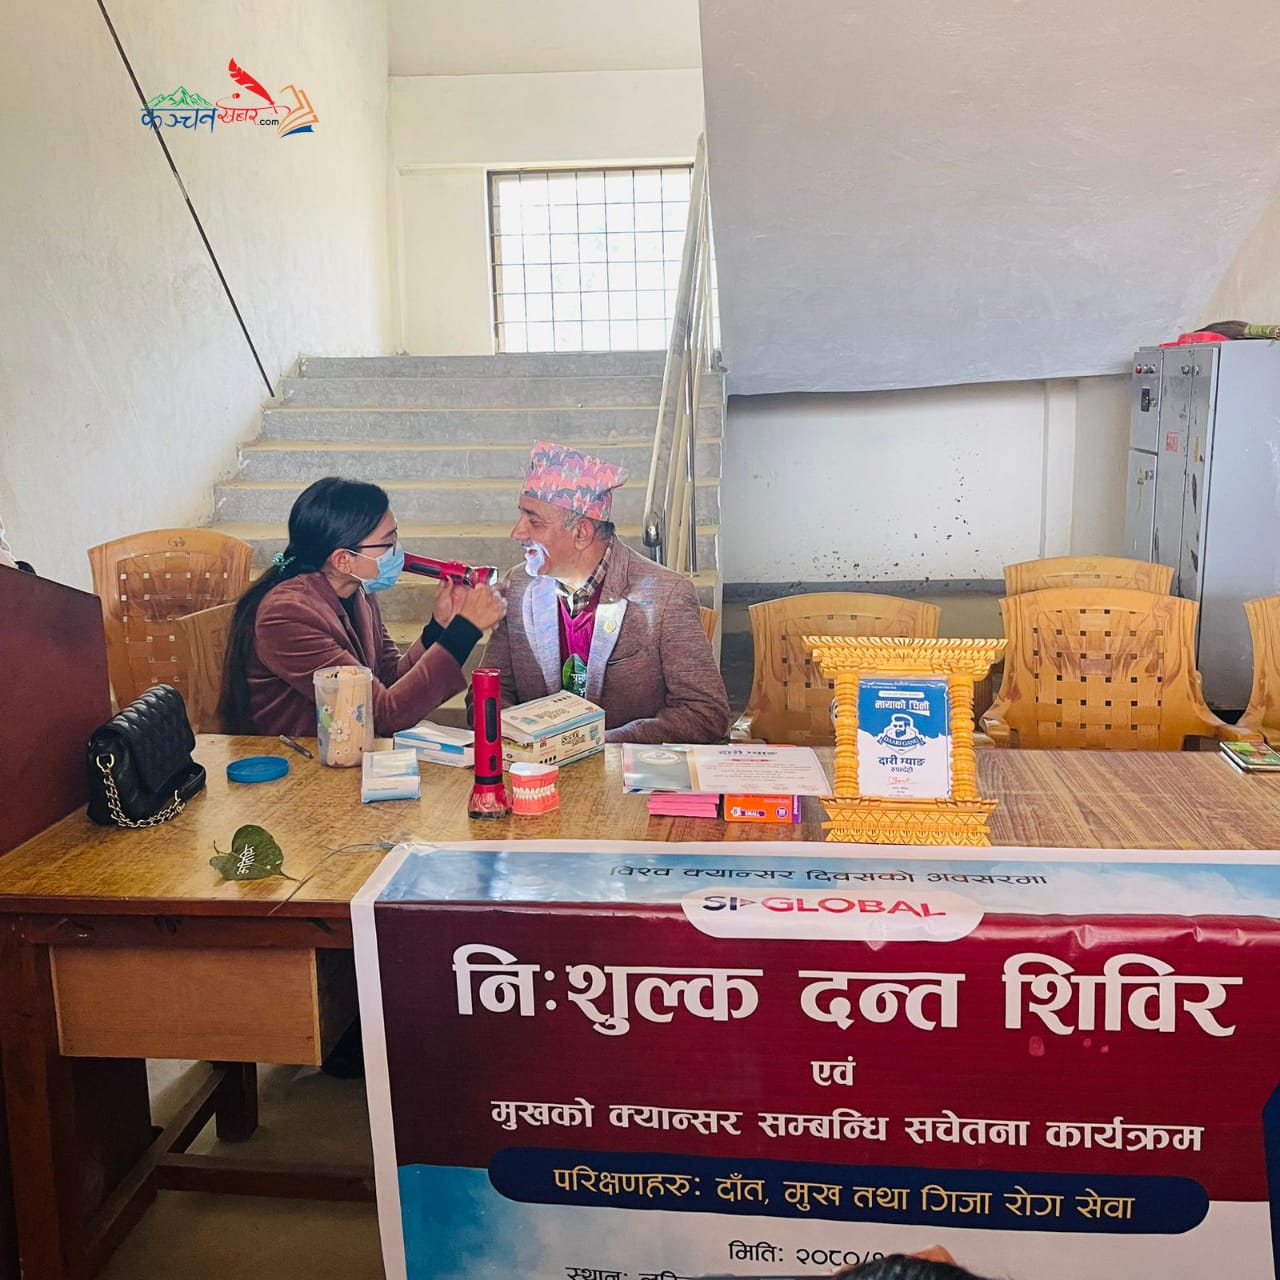 लुम्बिनी ज्ञाननिकेतनमा दाँत, मुख तथा क्यान्सर परिक्षण सम्बन्धी स्वास्थ्य शिविर